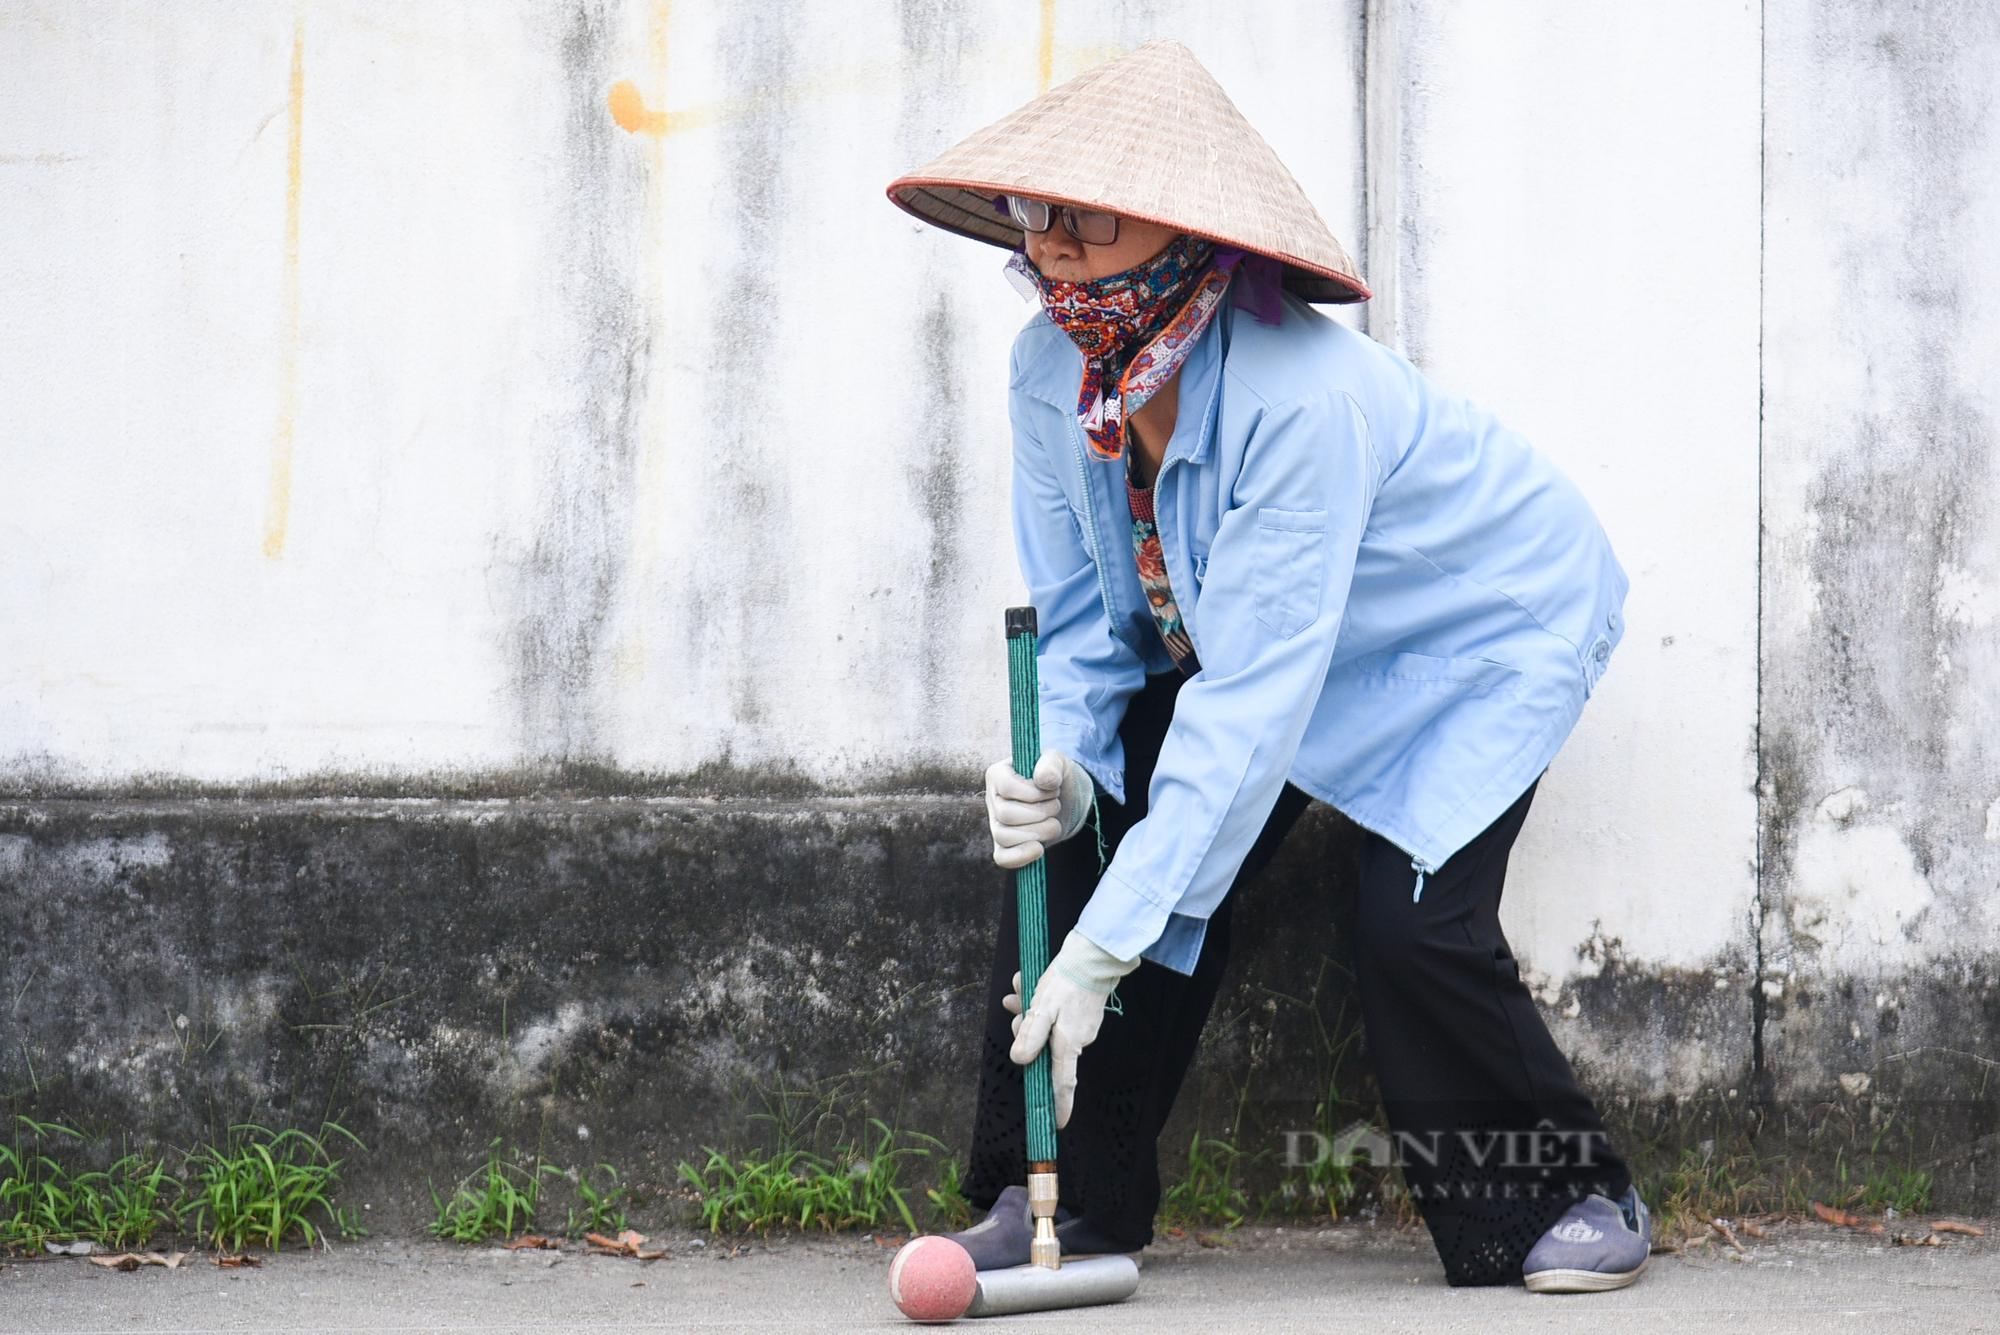 Người dân ngoại thành Hà Nội say mê vung gậy chơi môn thể thao quý tộc châu Âu - Ảnh 9.